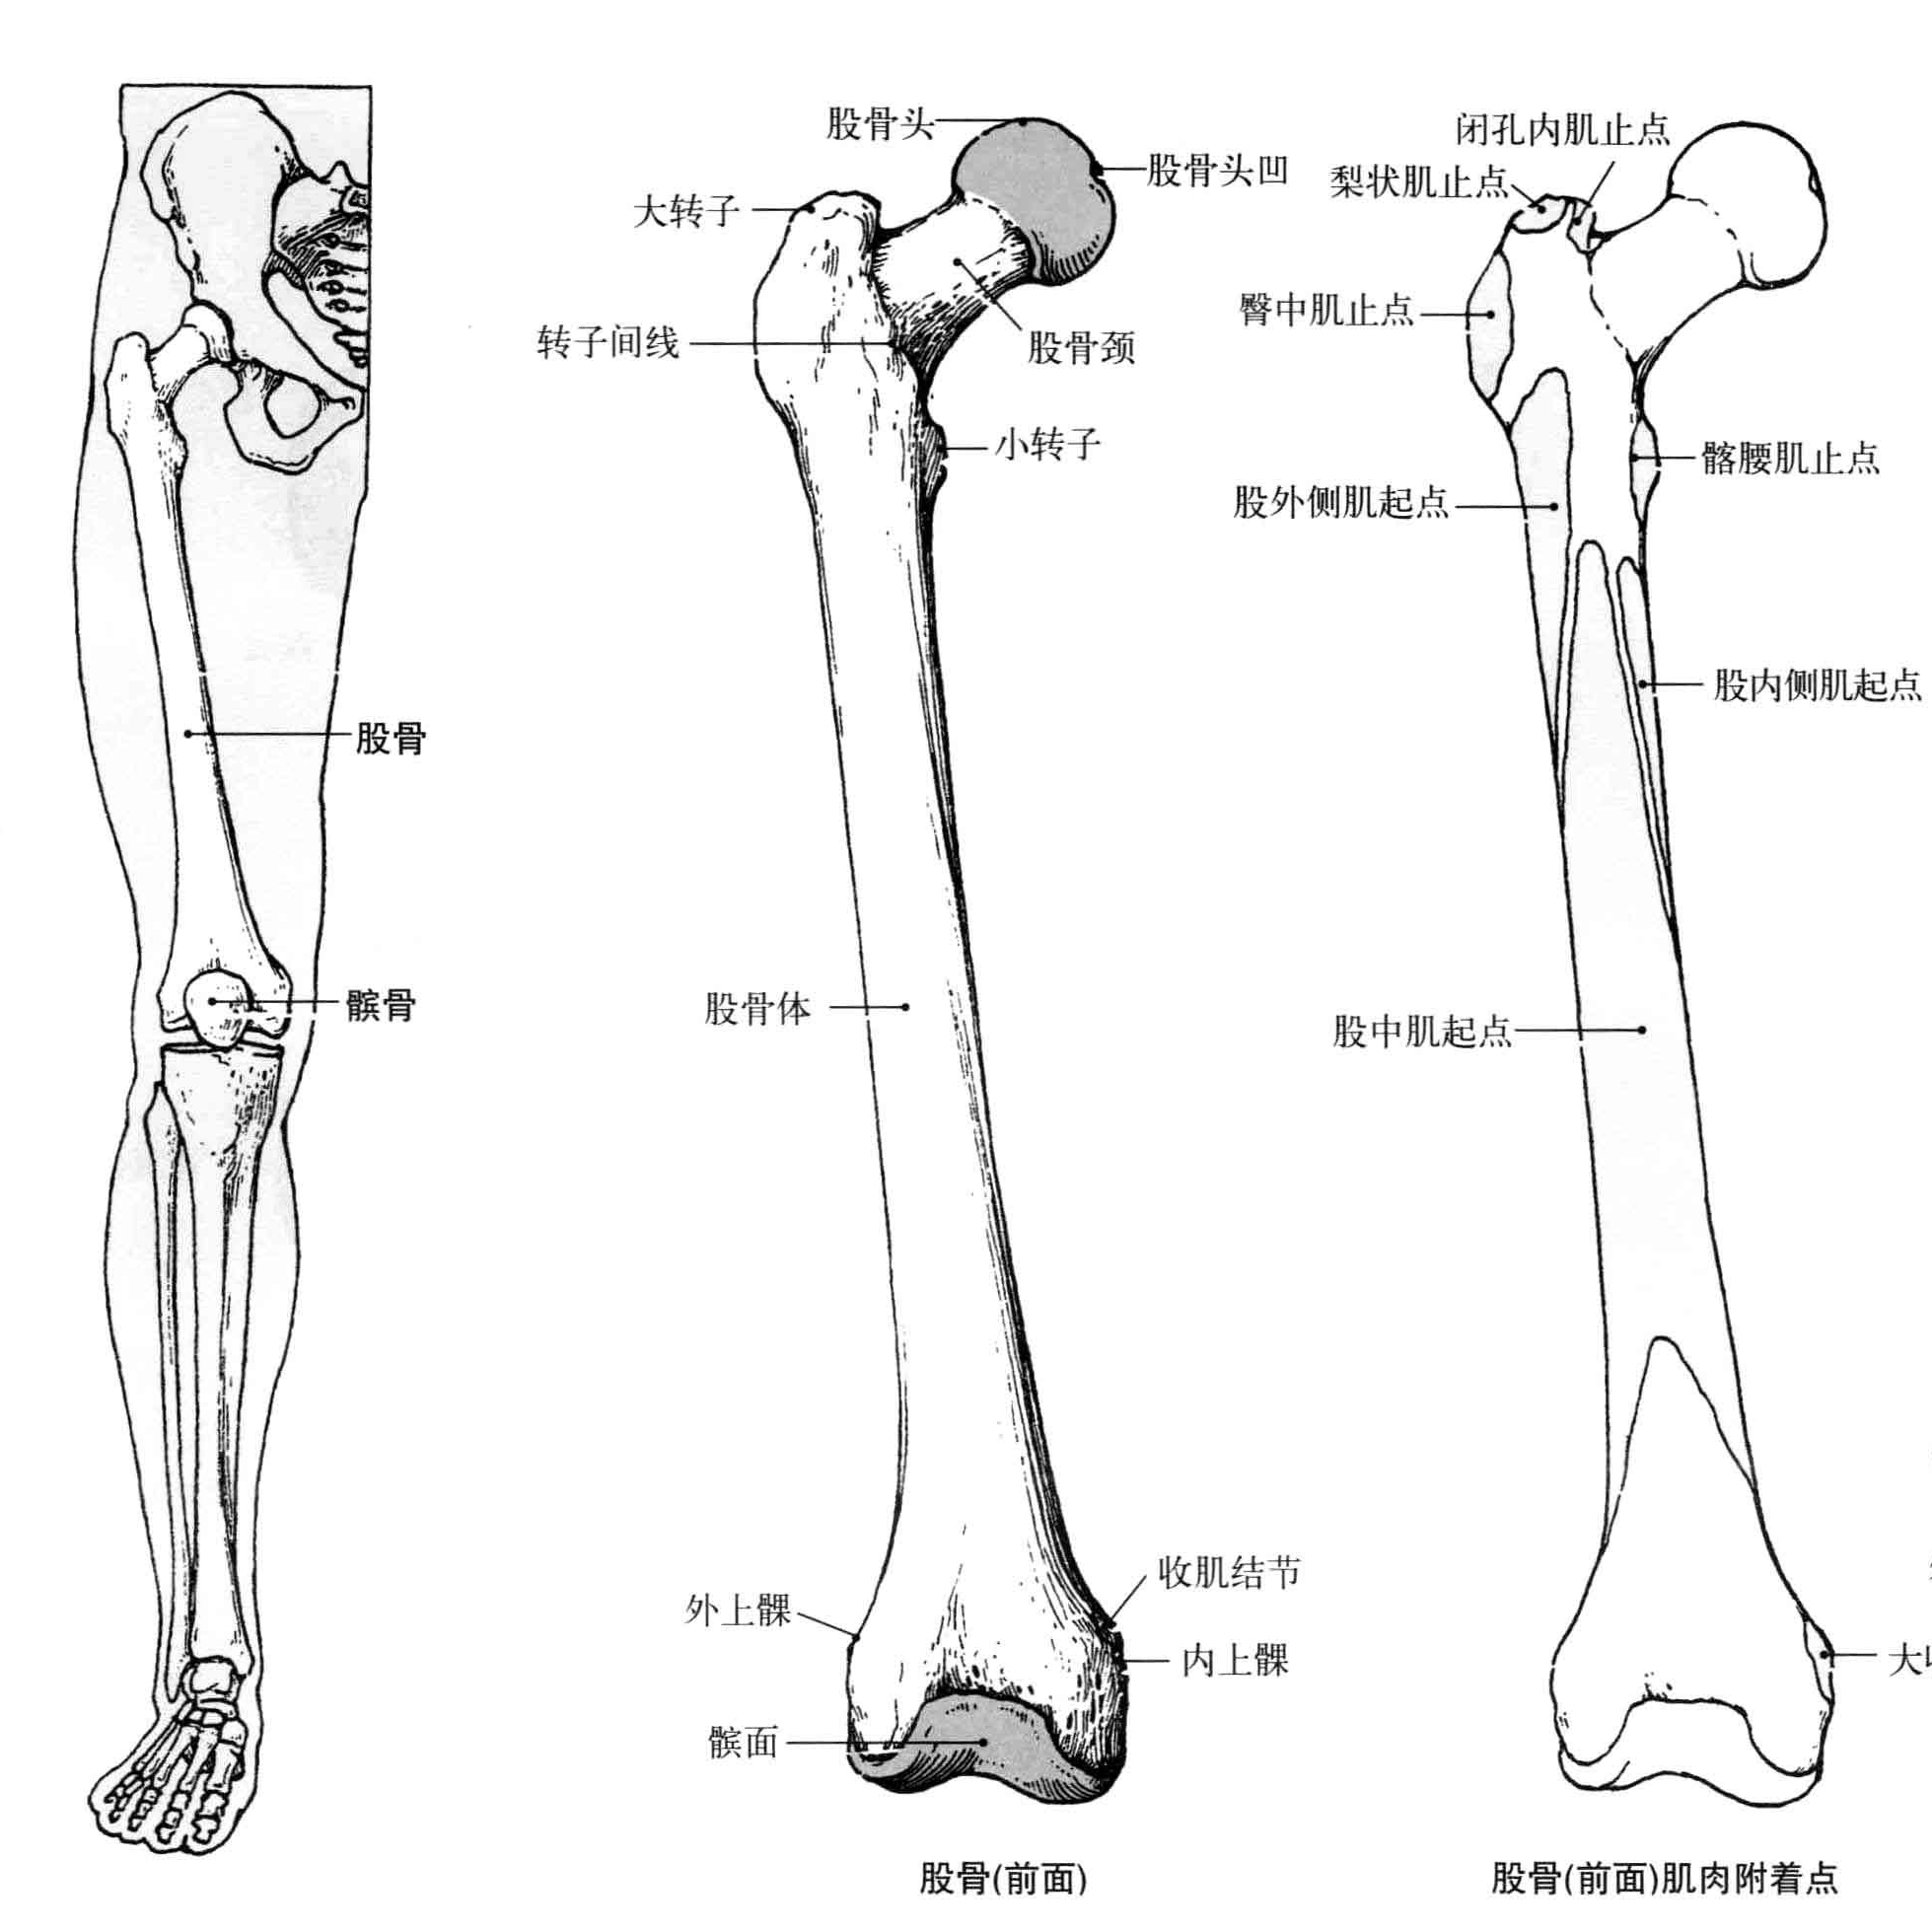 图3-2-6 下肢淋巴管和淋巴结-基础医学-医学